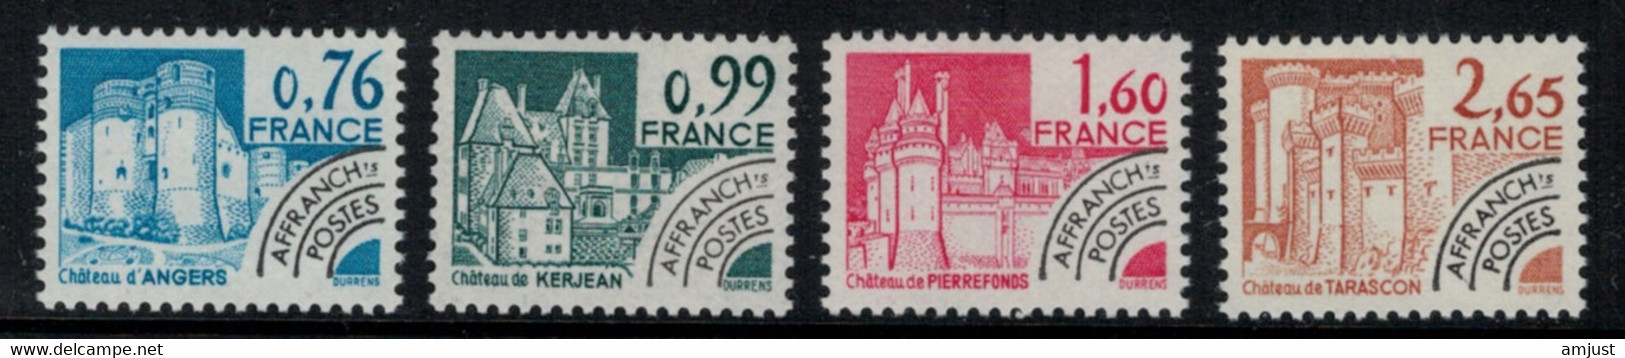 France // Préoblitérés // 1980 // Série Timbres Préoblitérés Neufs** MNH No. Y&T 166 à 169 - 1964-1988